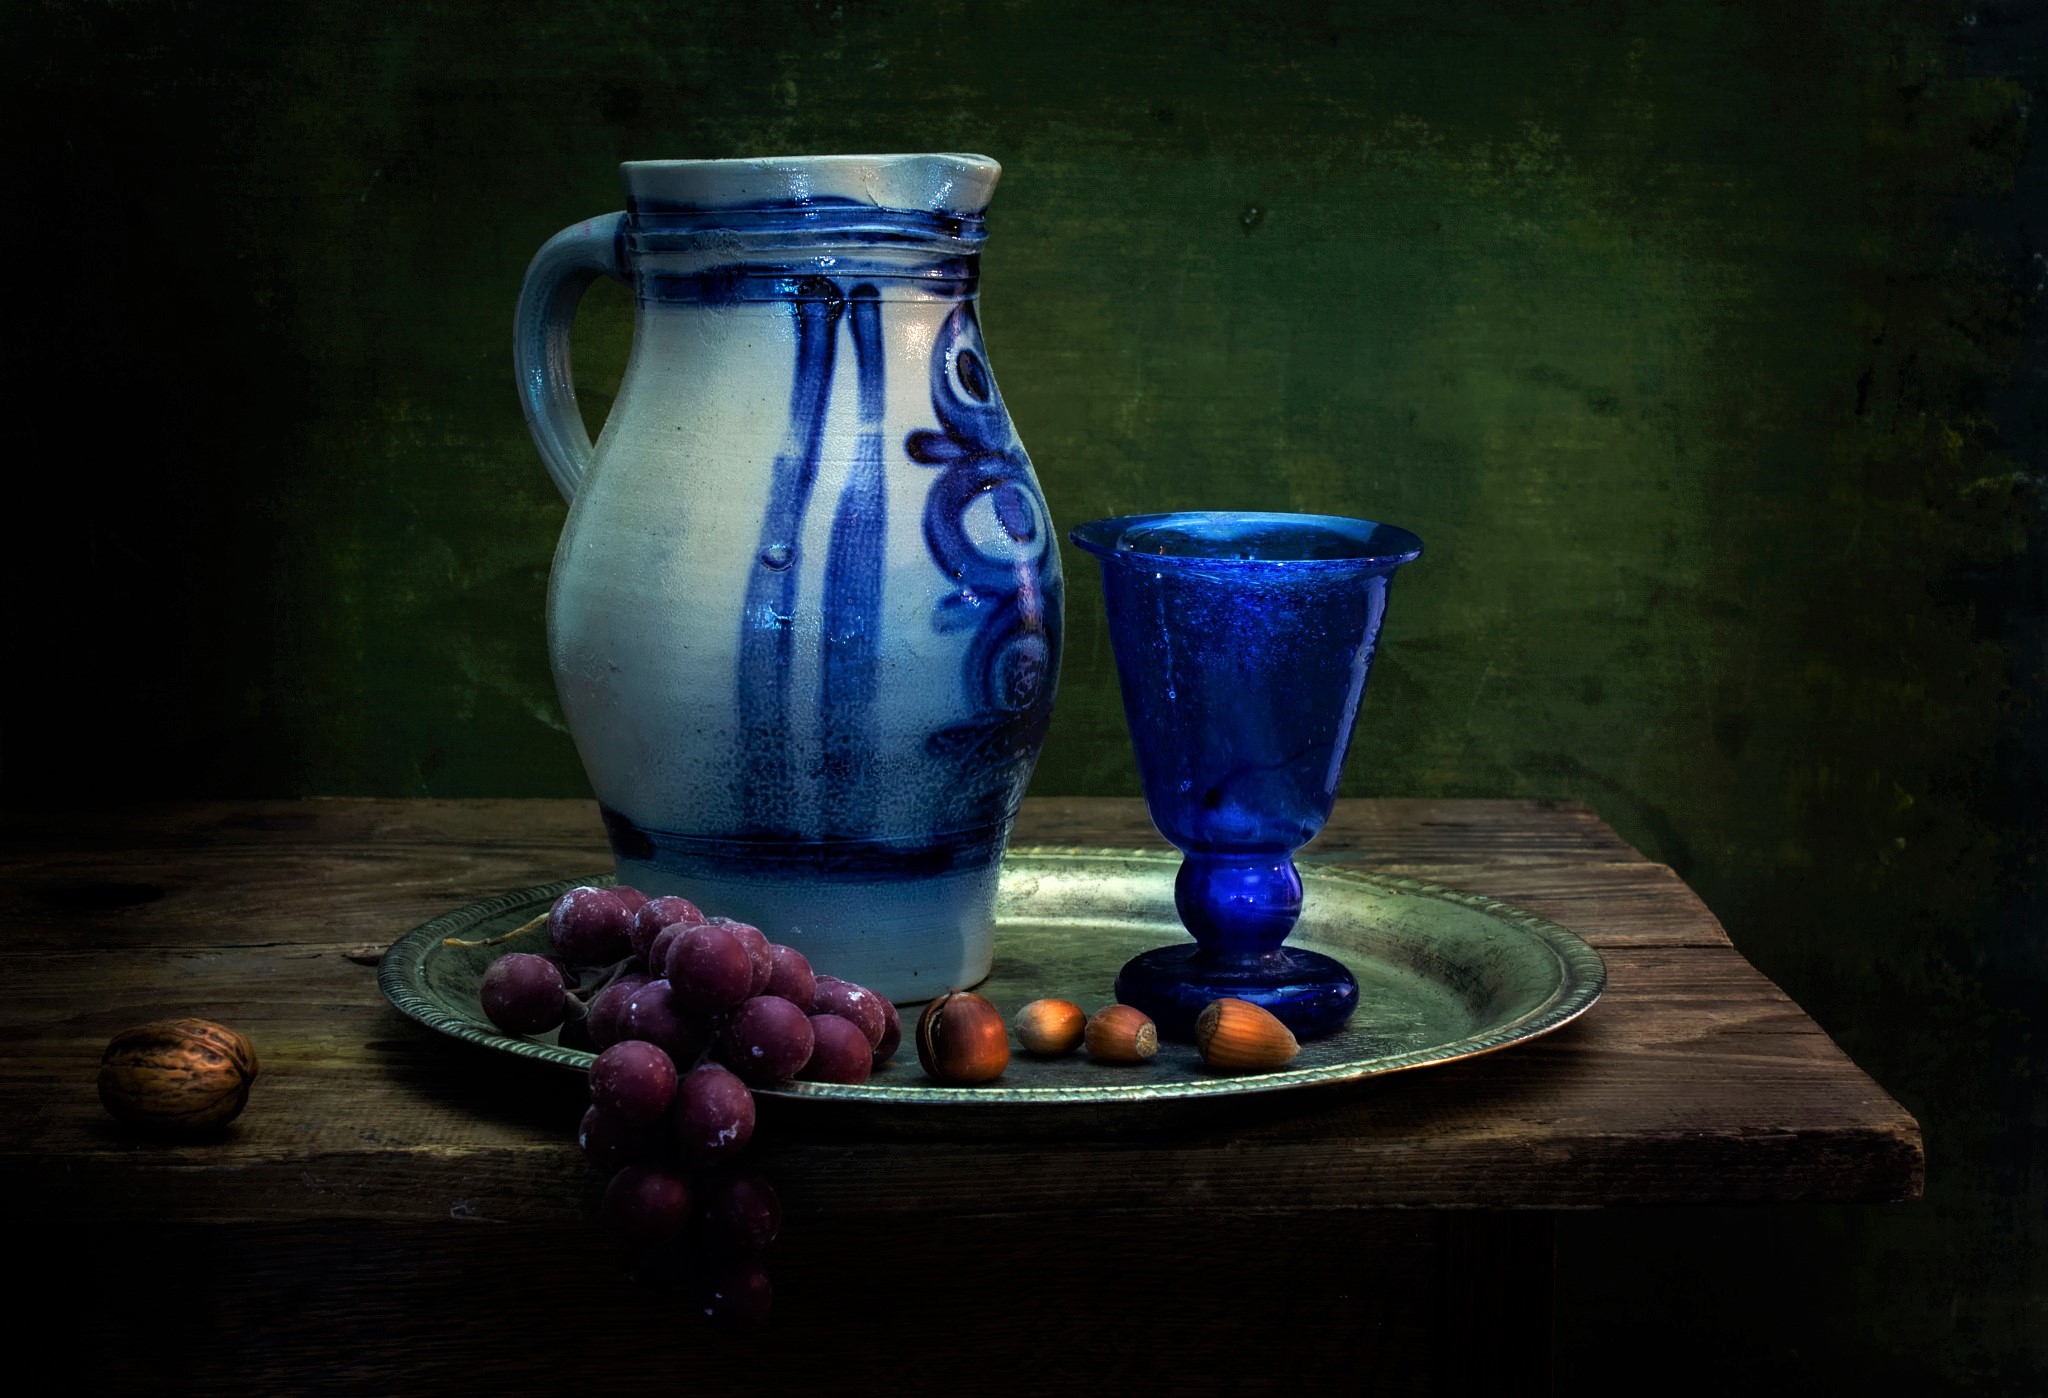 photography, still life, blue, glass, grapes, hazelnut, pitcher, plate, walnut